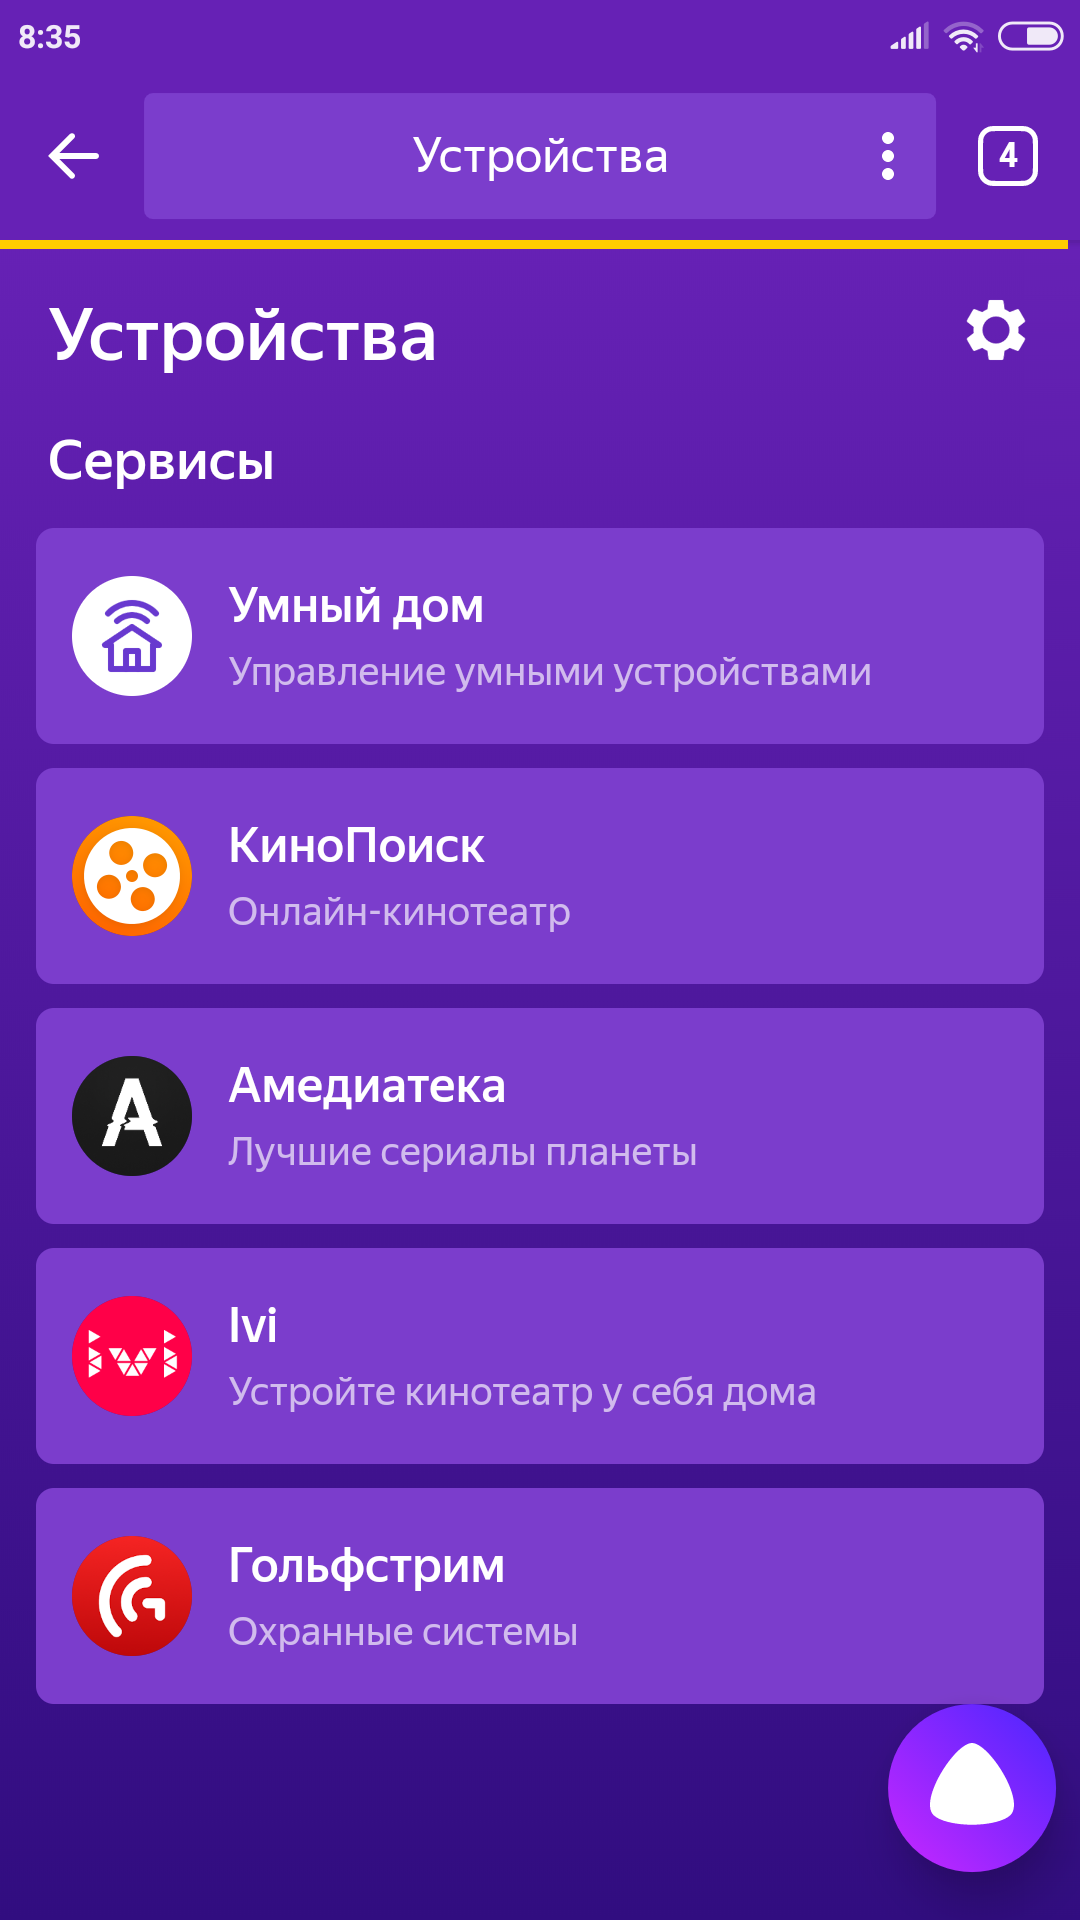 Яндекс эфир на смарт тв: как смотреть каналы, скачать, установить приложение яндекс браузер на телевизор samsung, lg